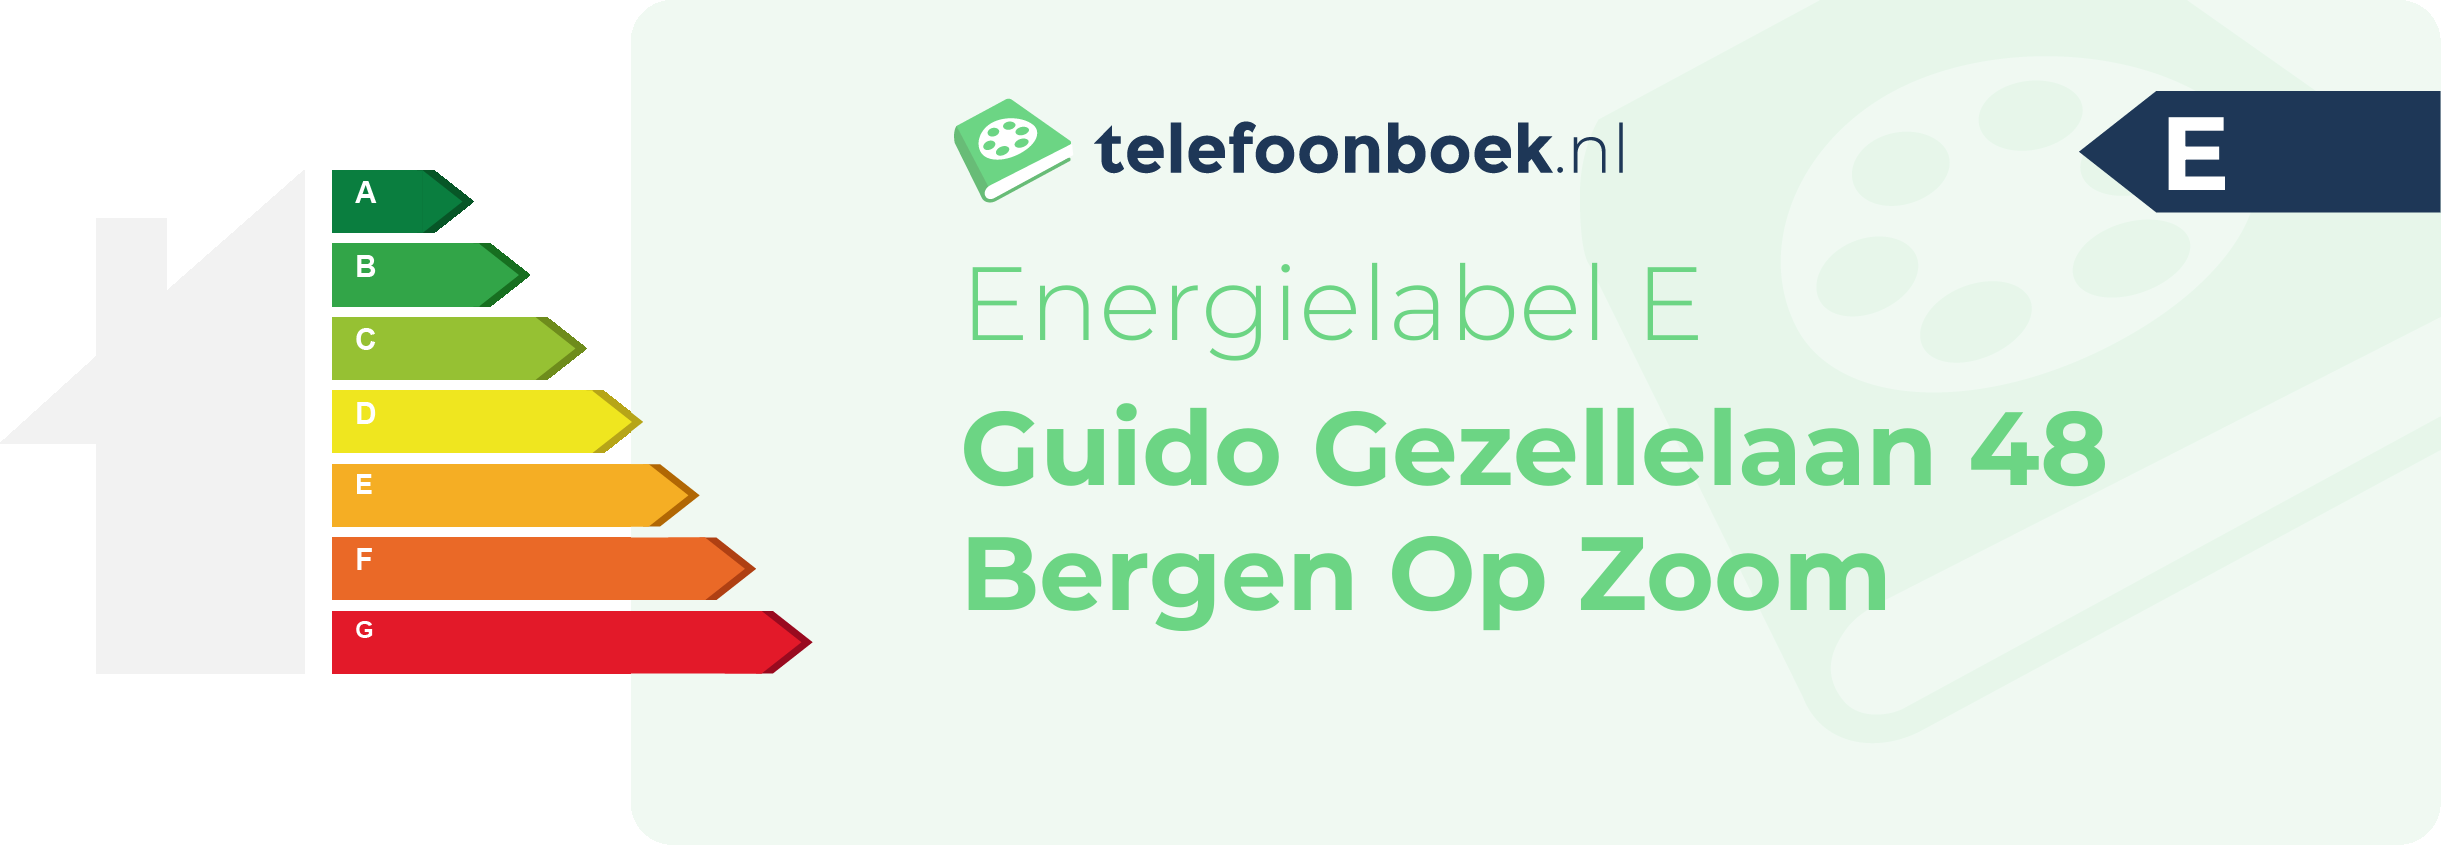 Energielabel Guido Gezellelaan 48 Bergen Op Zoom